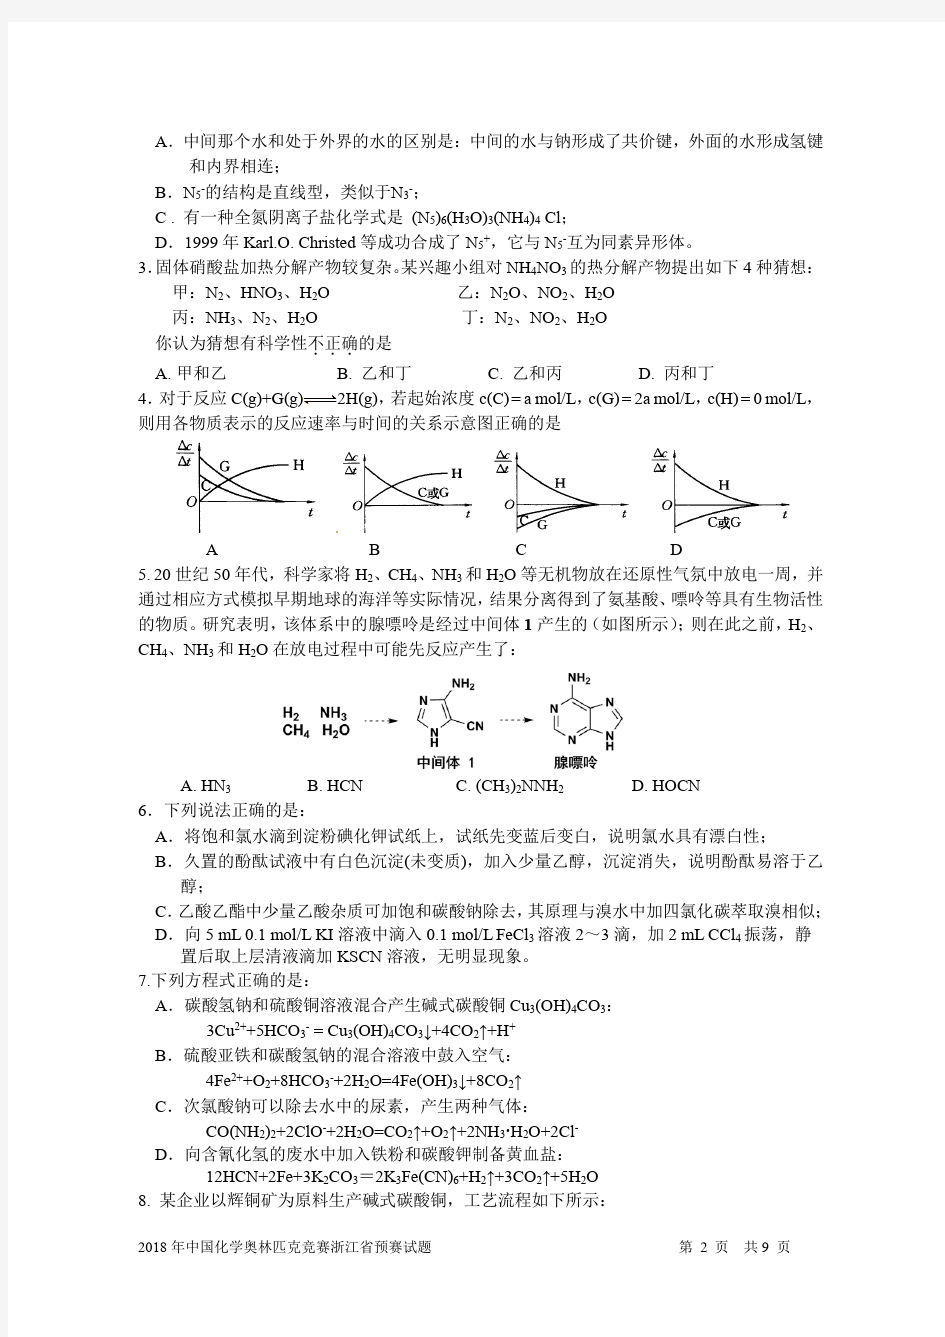 2018年化学奥林匹克竞赛浙江省预赛试题(高清晰版)